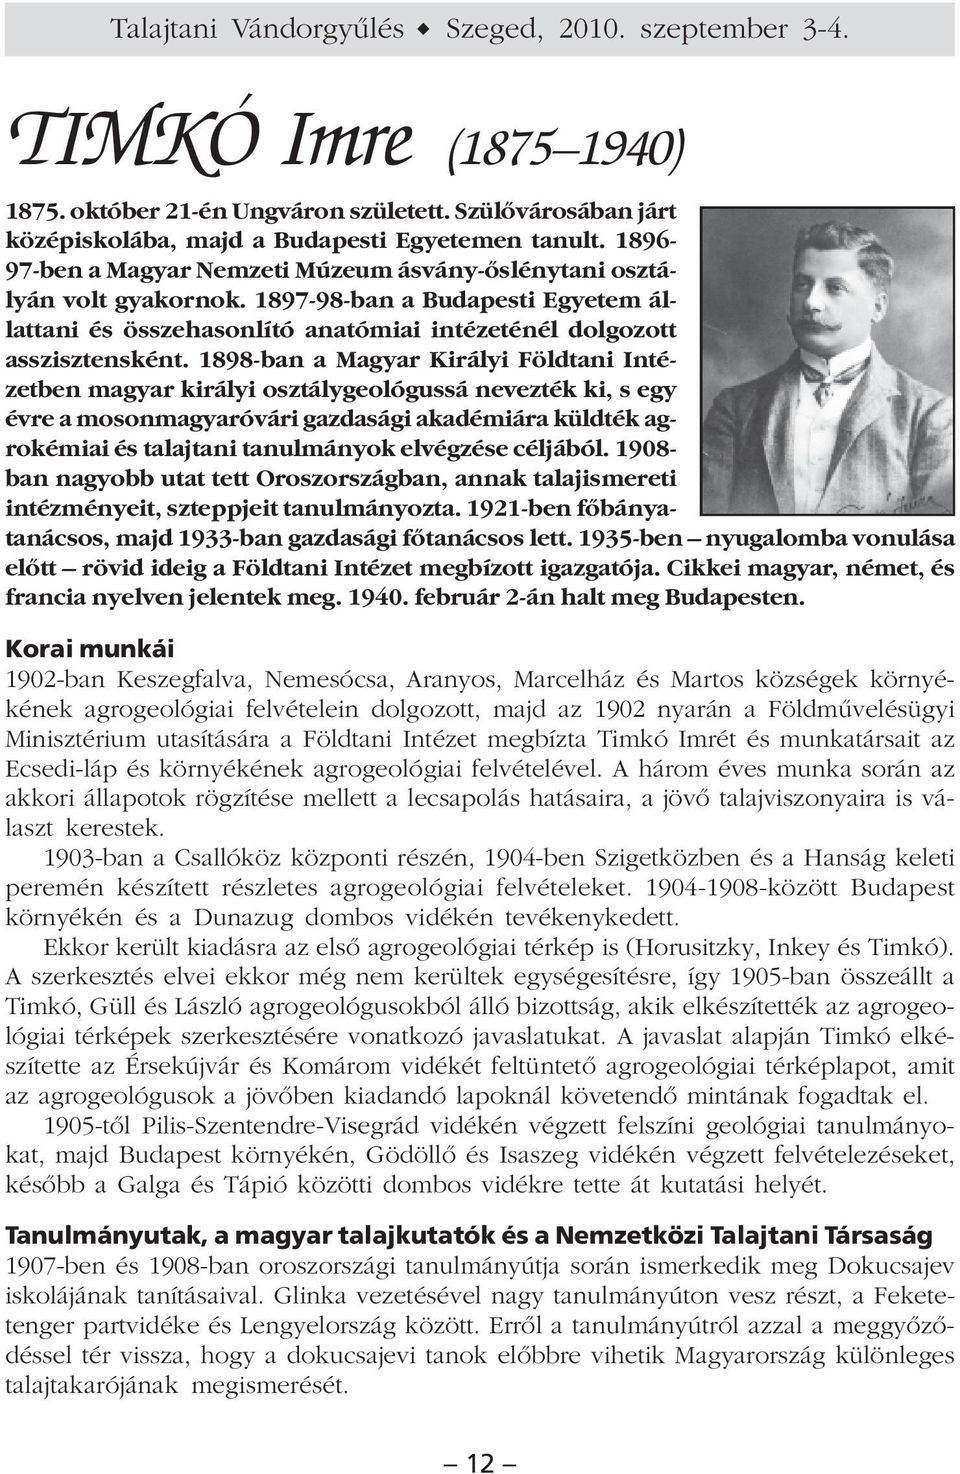 1898-ban a Magyar Királyi Földtani Intézetben magyar királyi osztálygeológussá nevezték ki, s egy évre a mosonmagyaróvári gazdasági akadémiára küldték agrokémiai és talajtani tanulmányok elvégzése